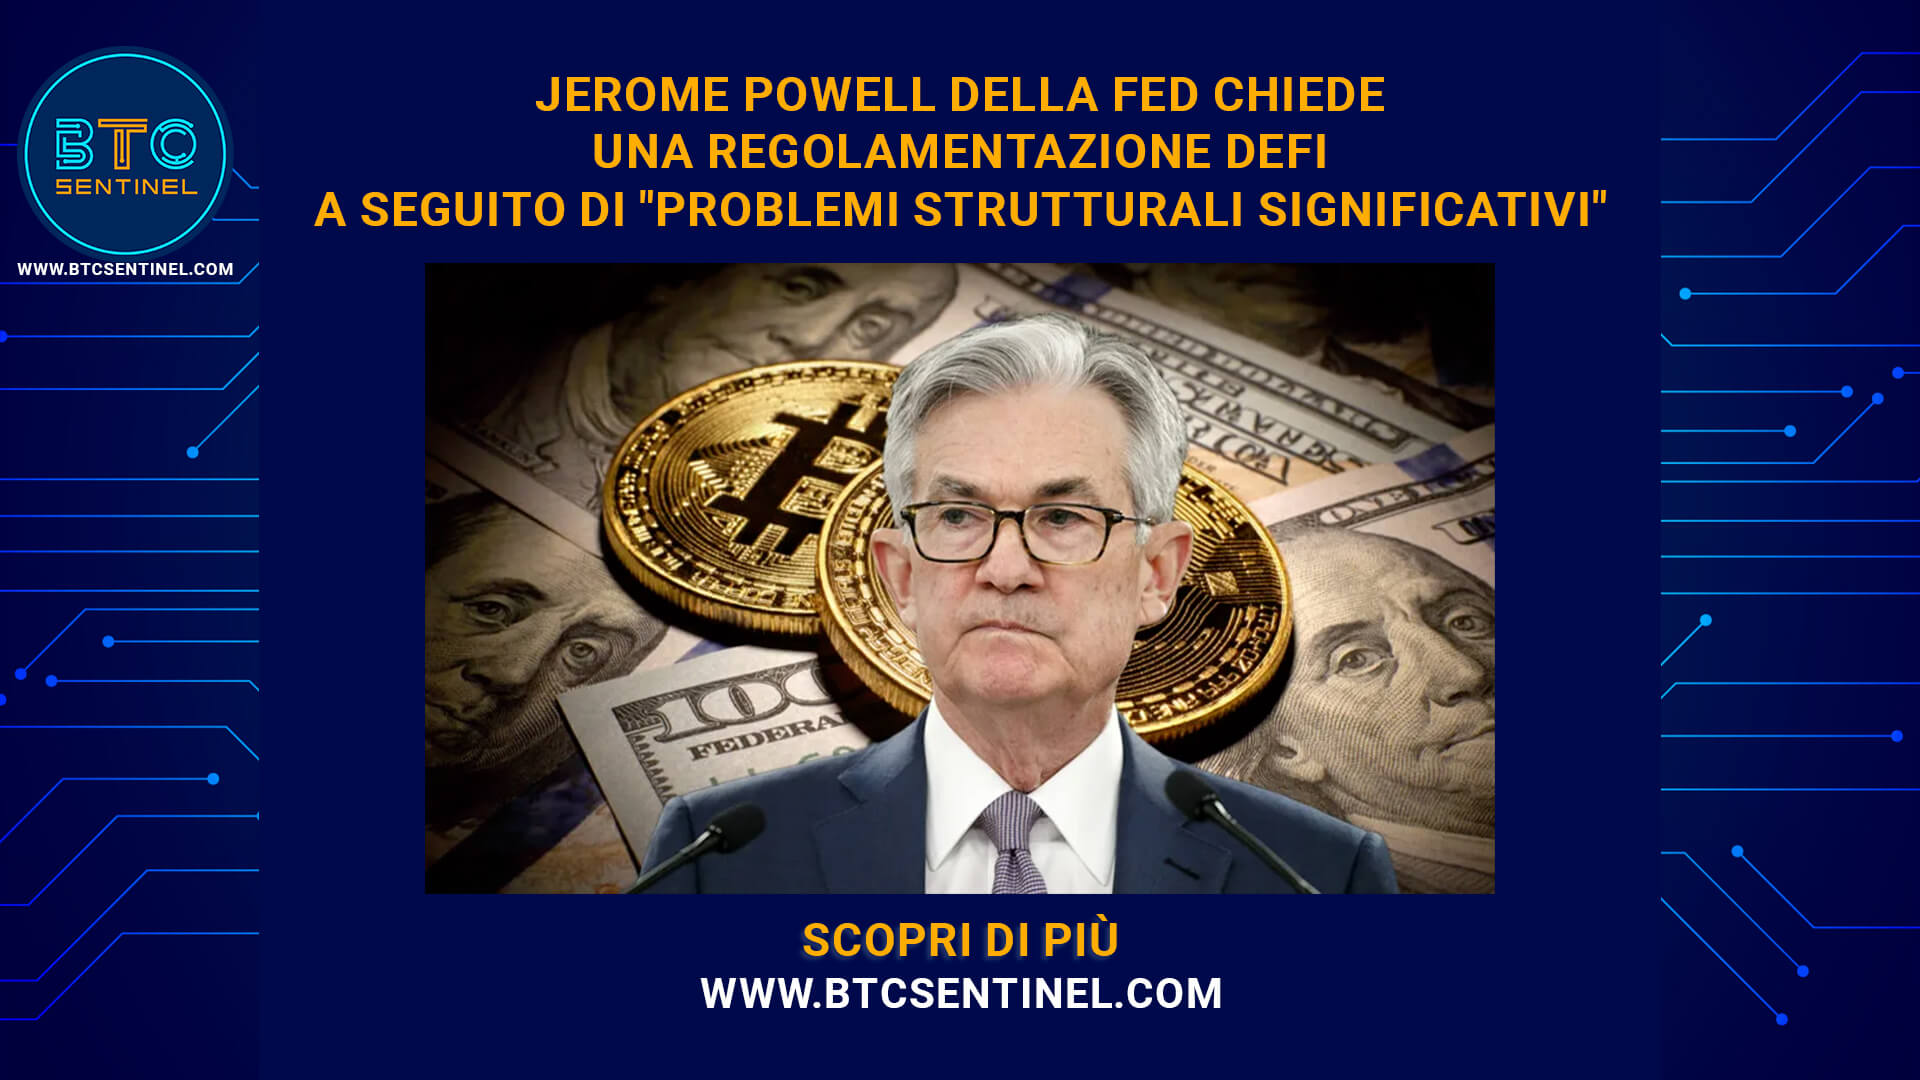 Powell della Fed chiede una regolamentazione DeFi a seguito di 